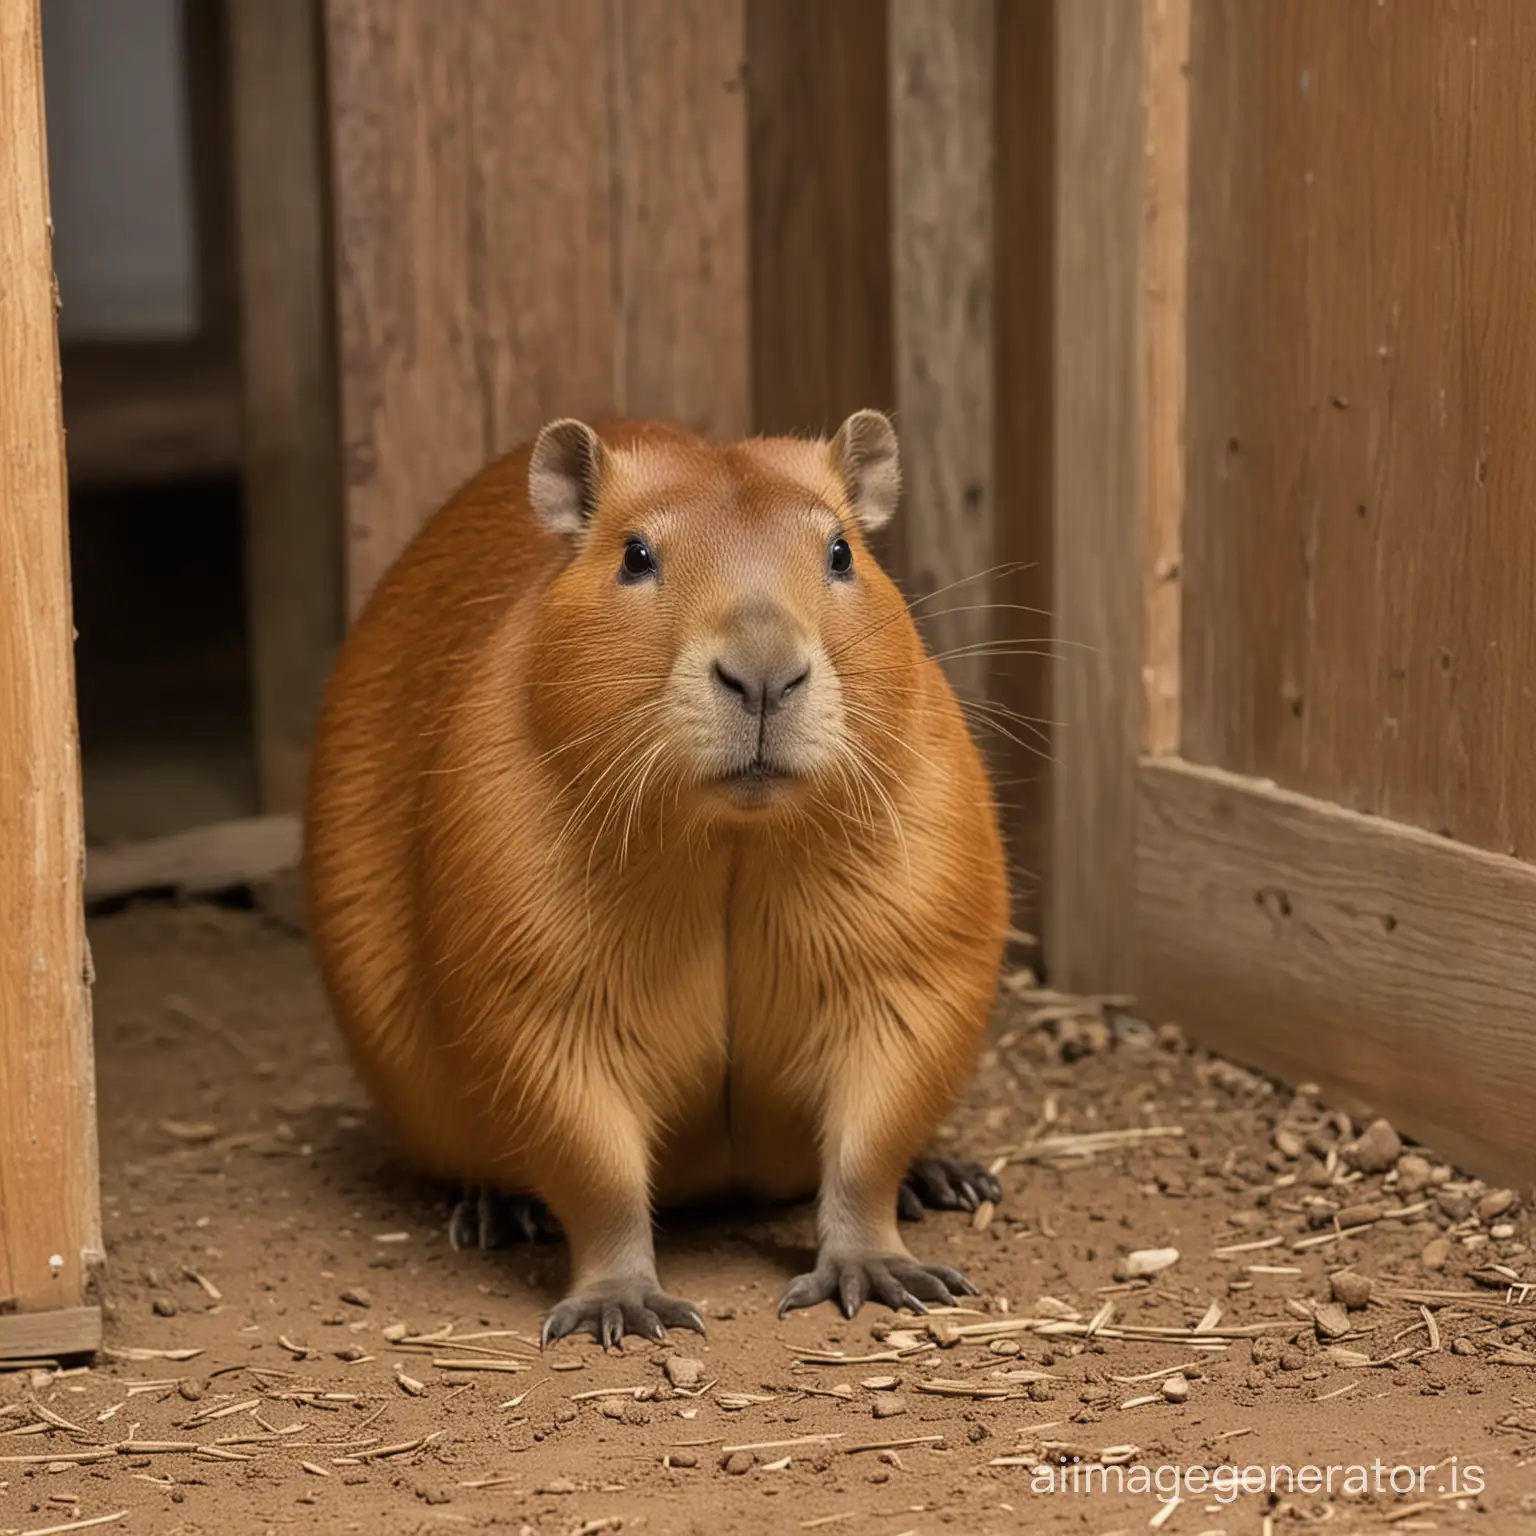 A capybara in a house